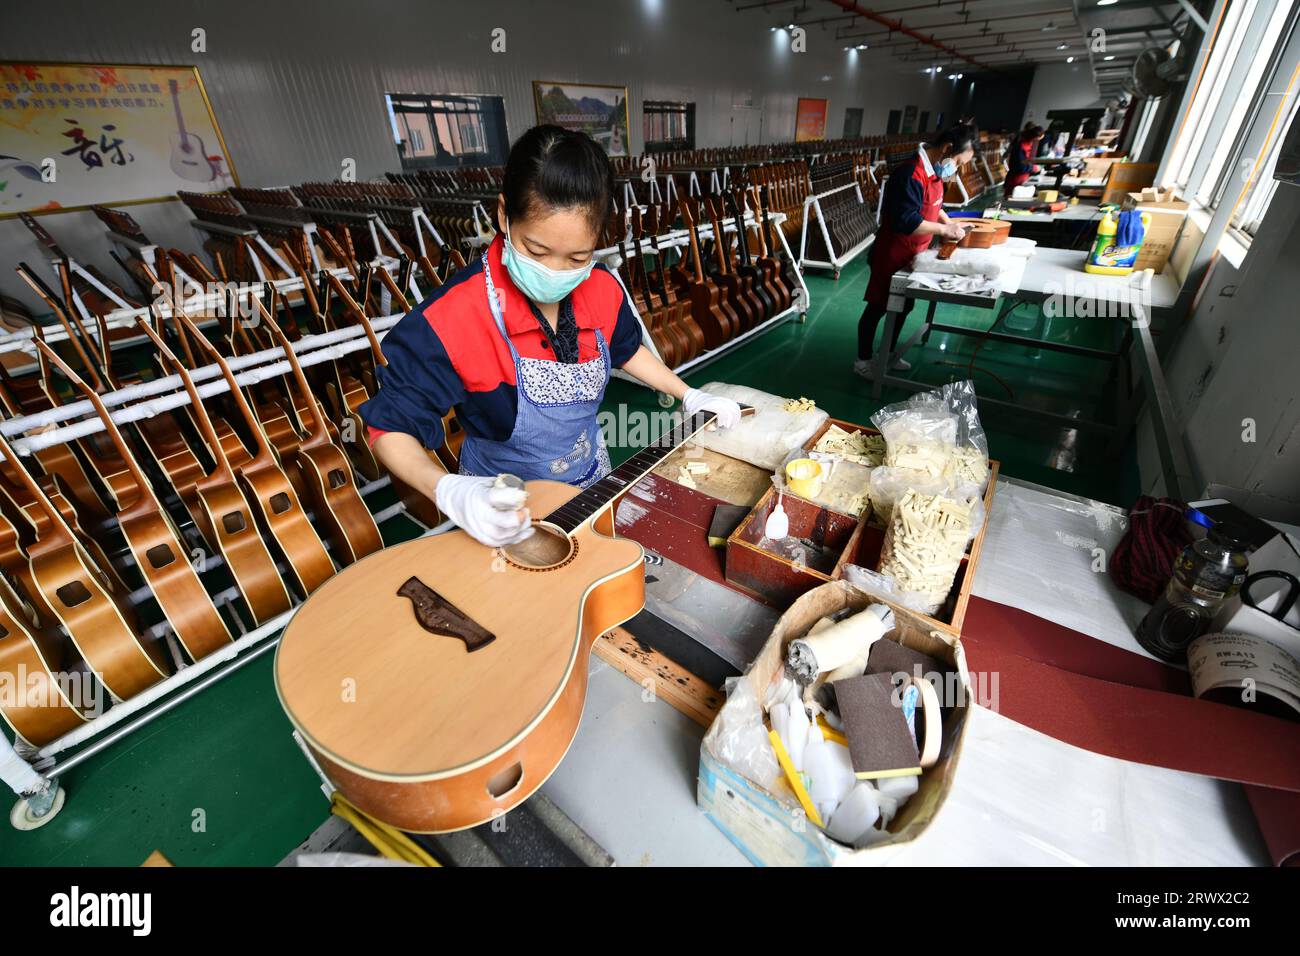 (230921) -- GUIYANG, 21. September 2023 (Xinhua) -- ein Mitarbeiter arbeitet an einer Gitarre in einer Werkstatt des Zheng'an Guitar Culture Industry Park im Kreis Zheng'an, Provinz Guizhou im Südwesten Chinas, 25. März 2020. Nach mehr als 200 aufwändigen und langwierigen Herstellungsverfahren kommen exquisit gefertigte Gitarren als charakteristische Produkte des Zheng'an County in der südwestlichen chinesischen Provinz Guizhou heraus. Diese Kunstwerke werden dann über die China-Europa-Güterzüge, den Wassertransport und andere Mittel in die Welt verteilt. UM MIT "Economic Watch: Chinesische Gitarrenindustrie reitet auf Wave o Stockfoto